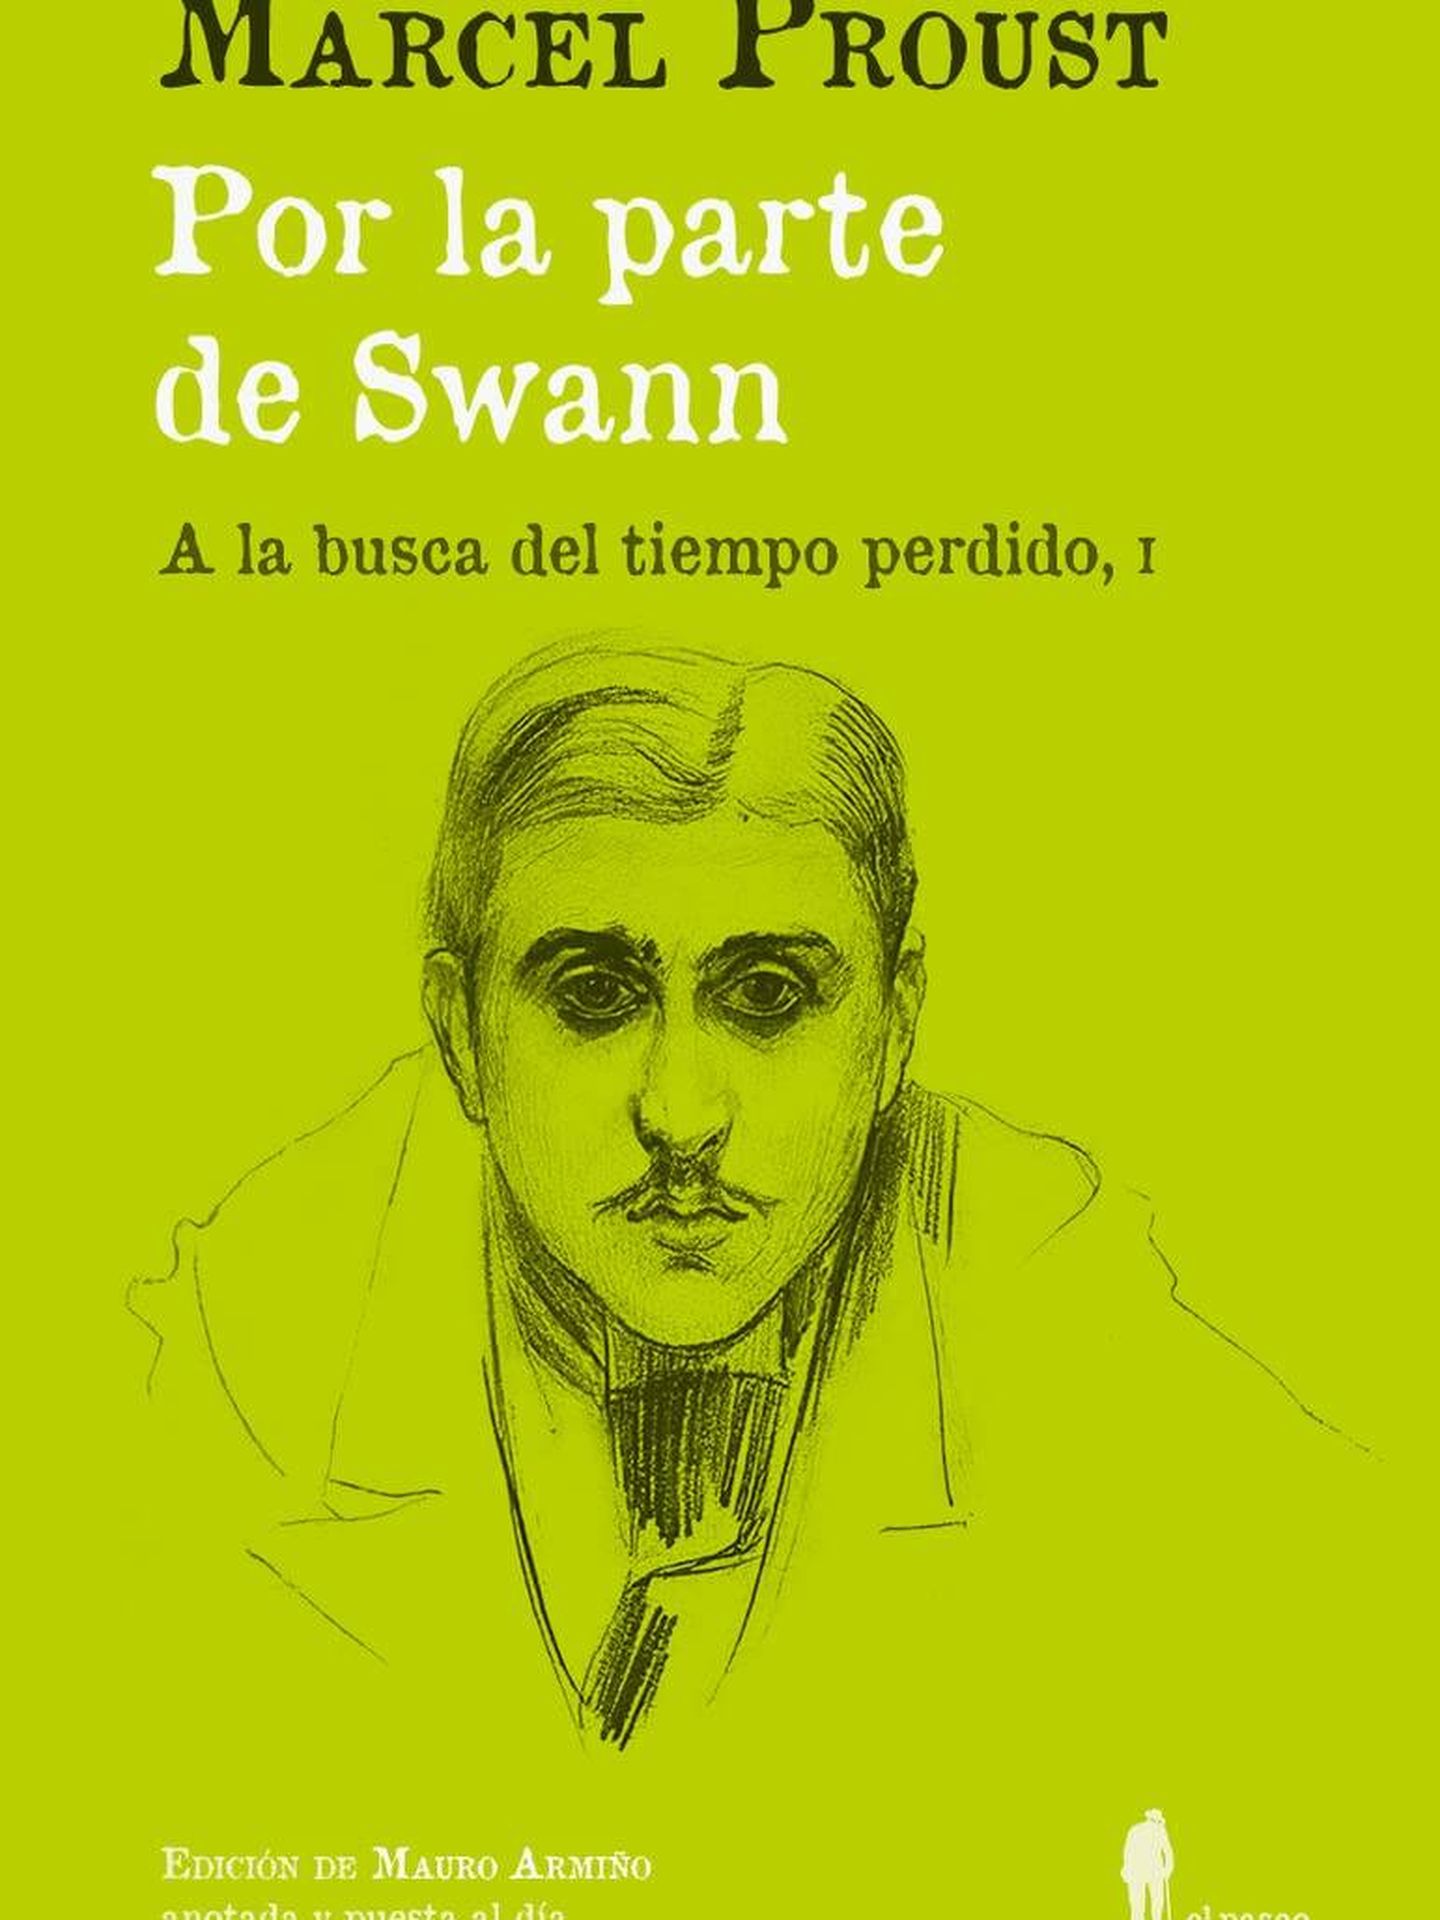 'A la busca del tiempo perdido', en la nueva edición de Mauro Armiño. 